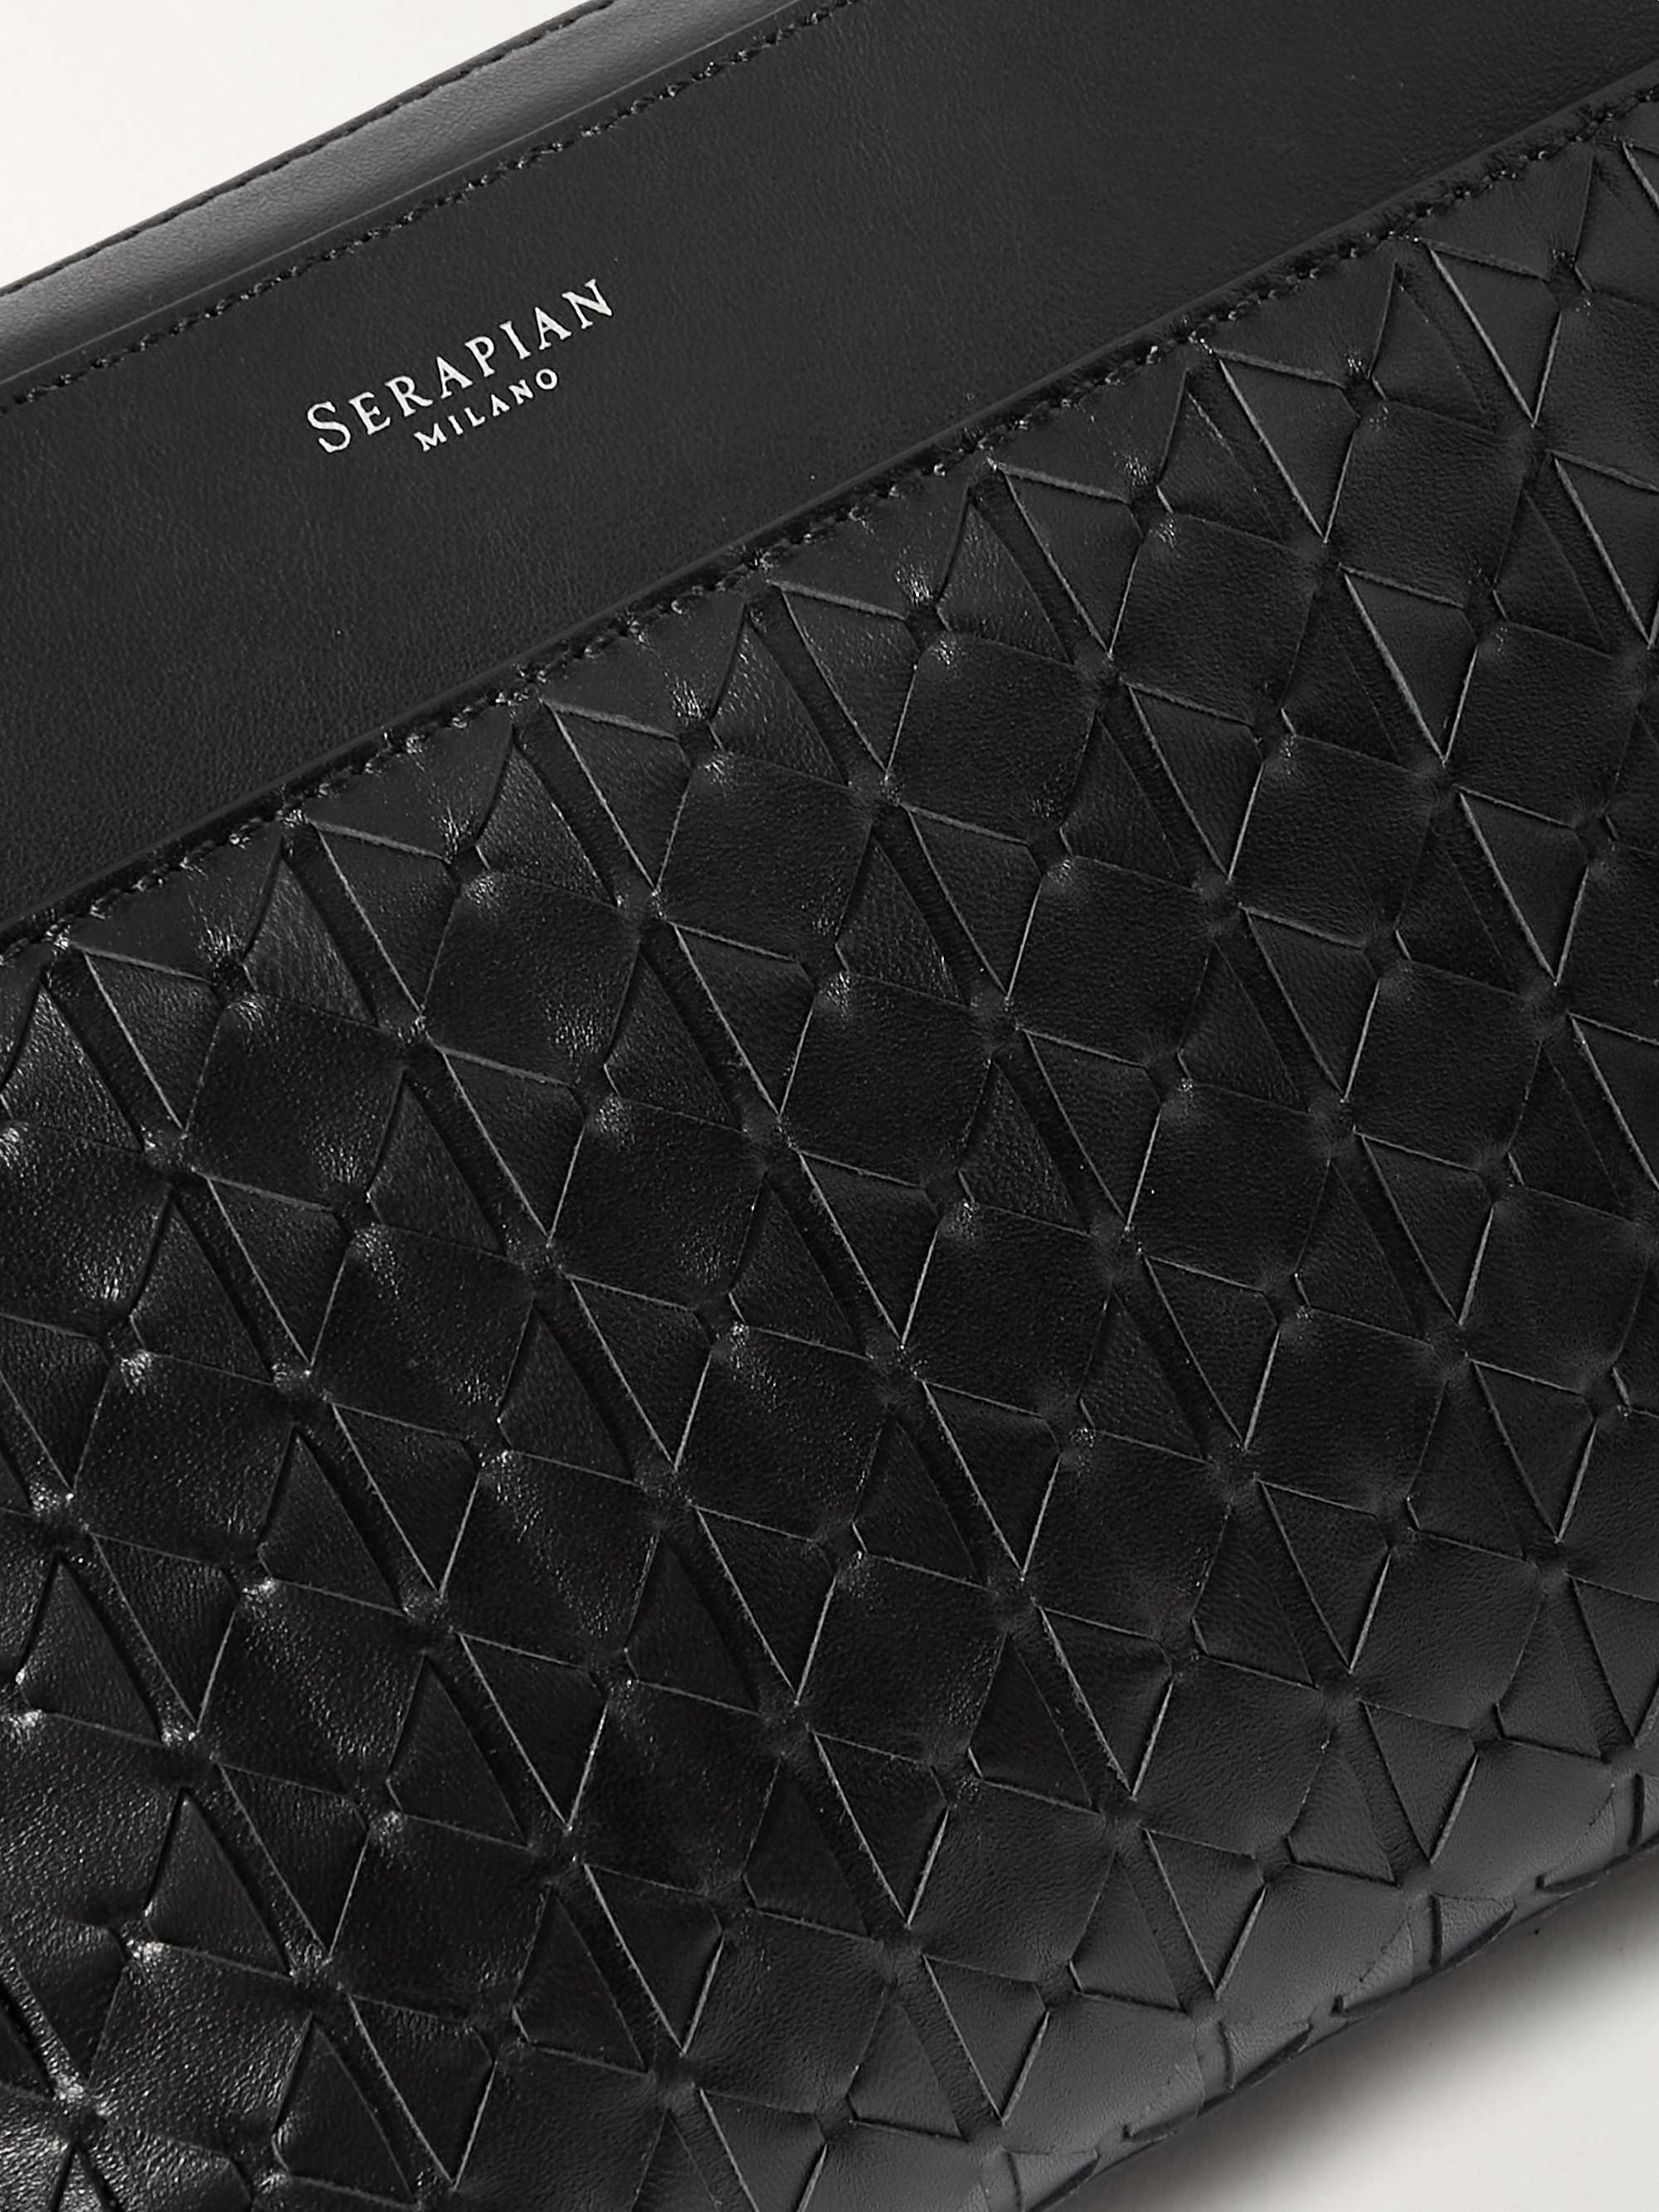 SERAPIAN Mosaico Woven Leather Messenger Bag